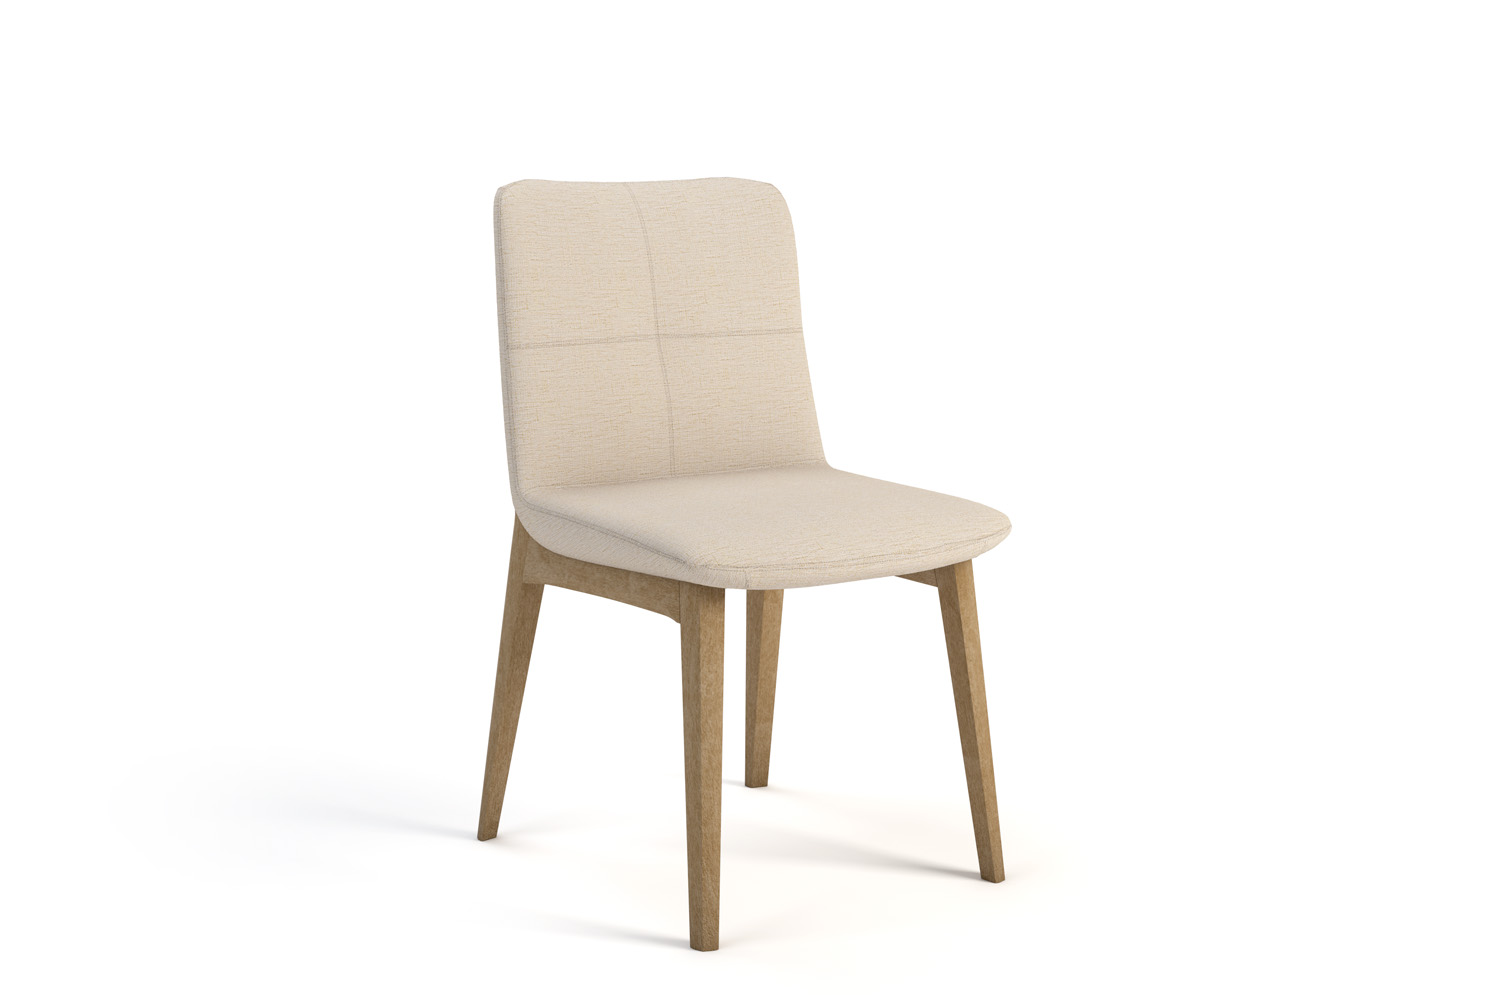 Addy Wood Leg Chair